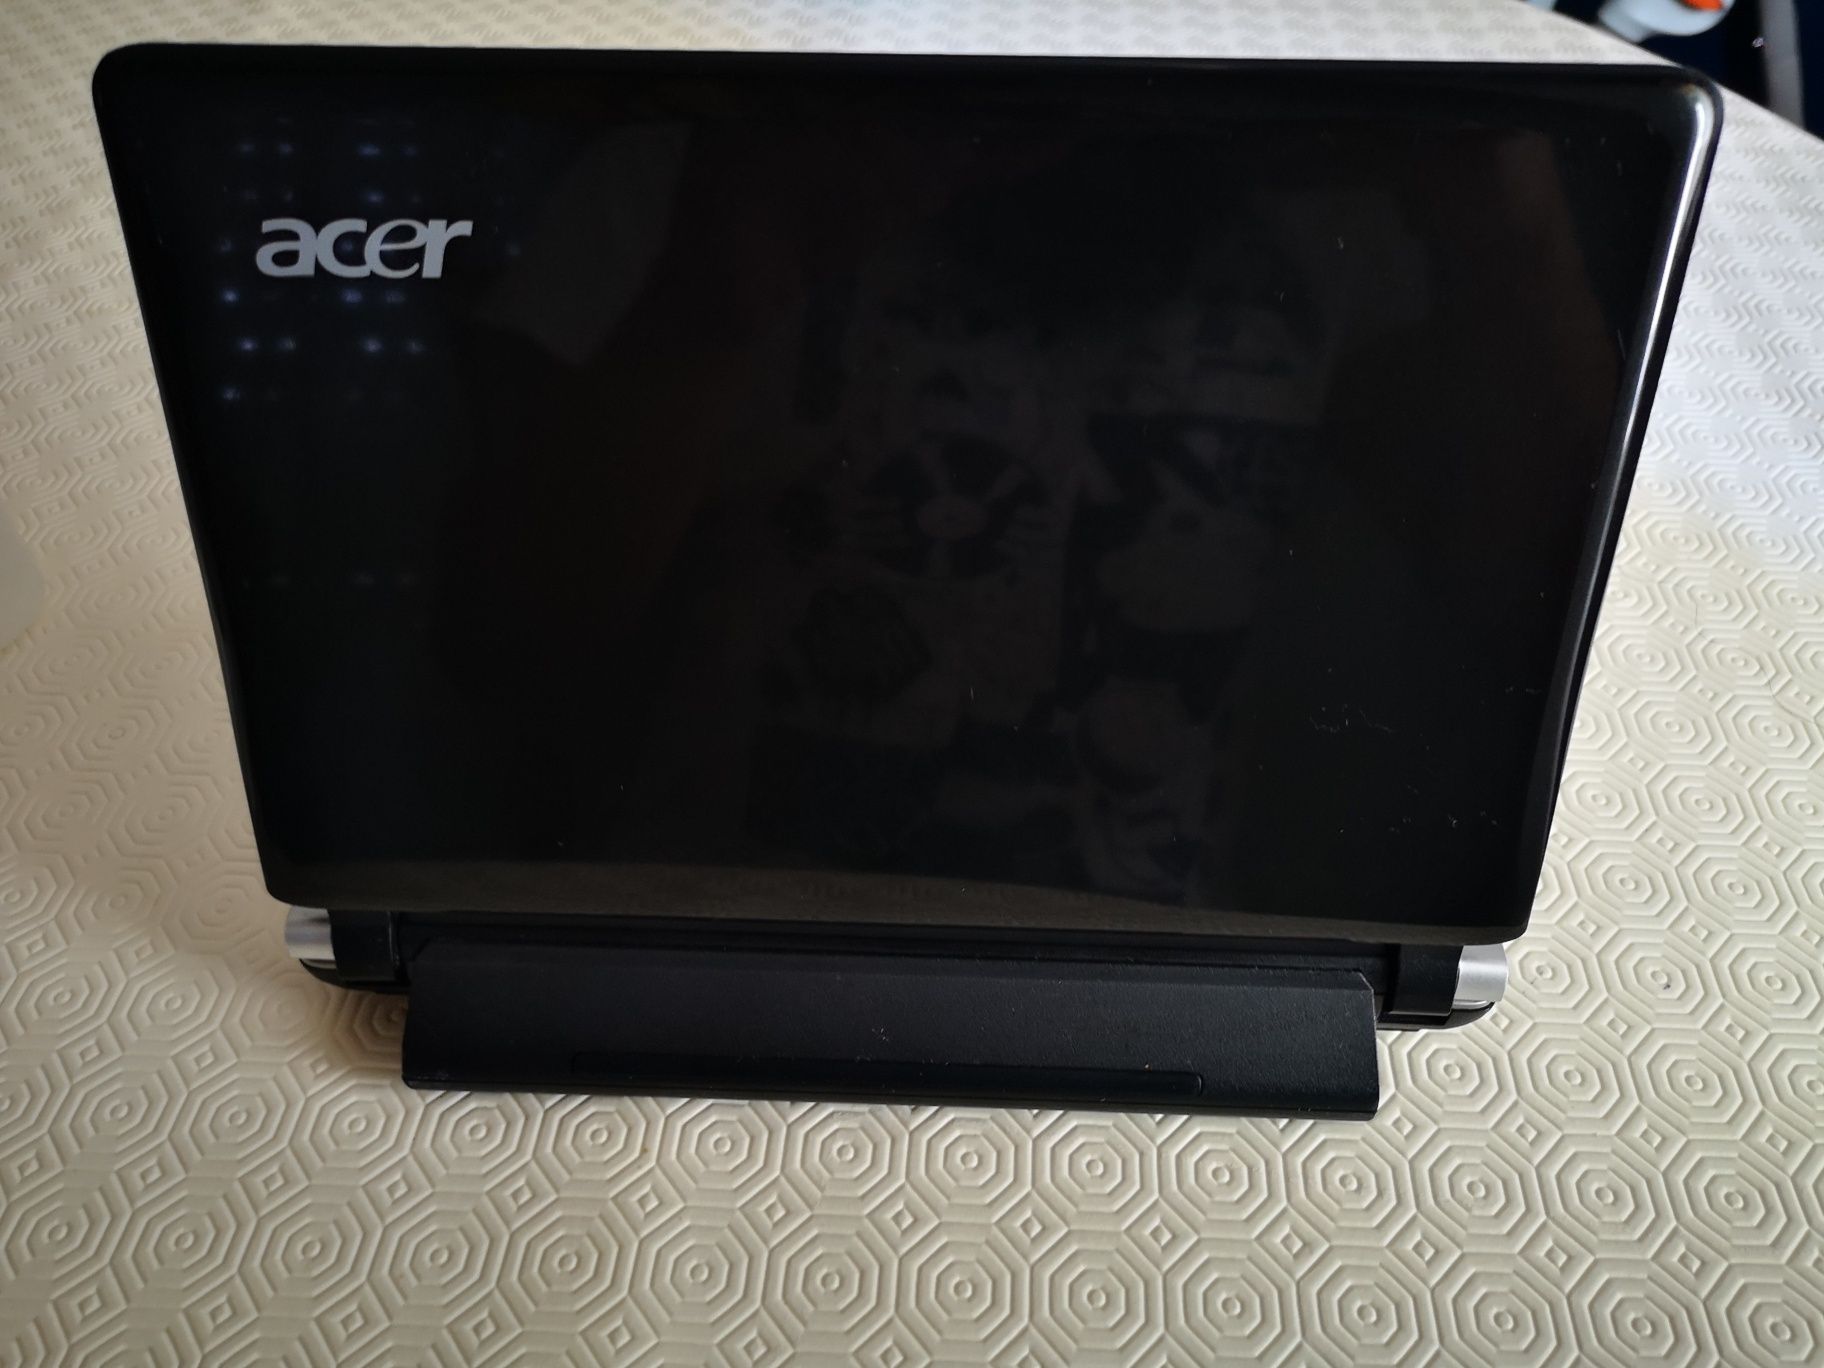 Portátil Acer Aspire One pequeno